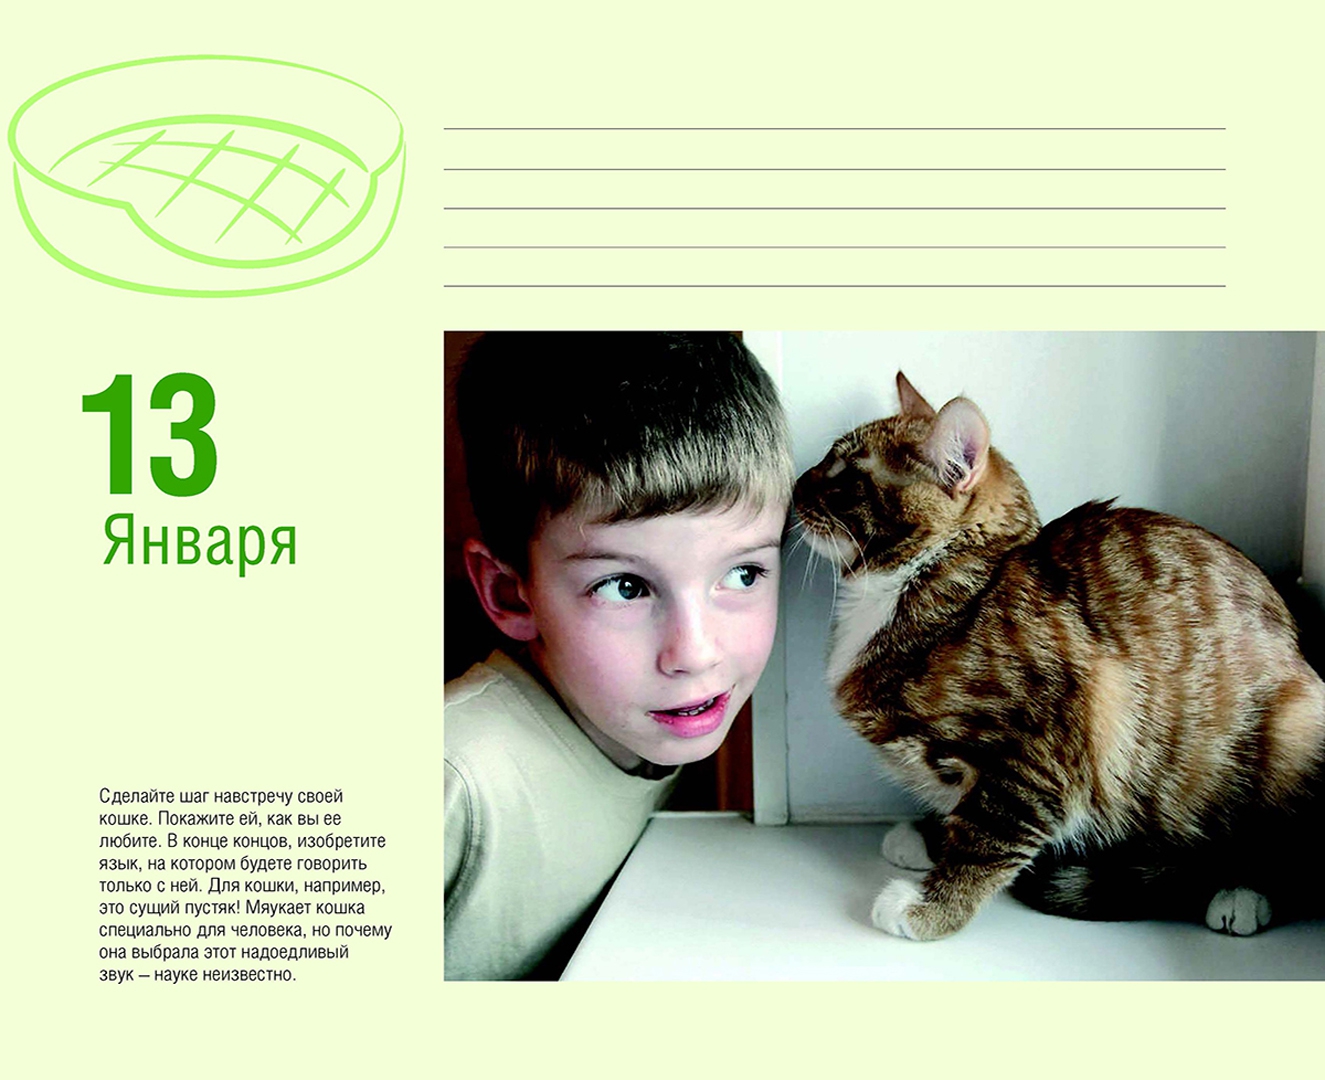 Иллюстрация 17 из 43 для Календарь "Котики. Лучшие кото-фото. 365 дней в году", универсальный - Евгения Гюнтер | Лабиринт - сувениры. Источник: Лабиринт